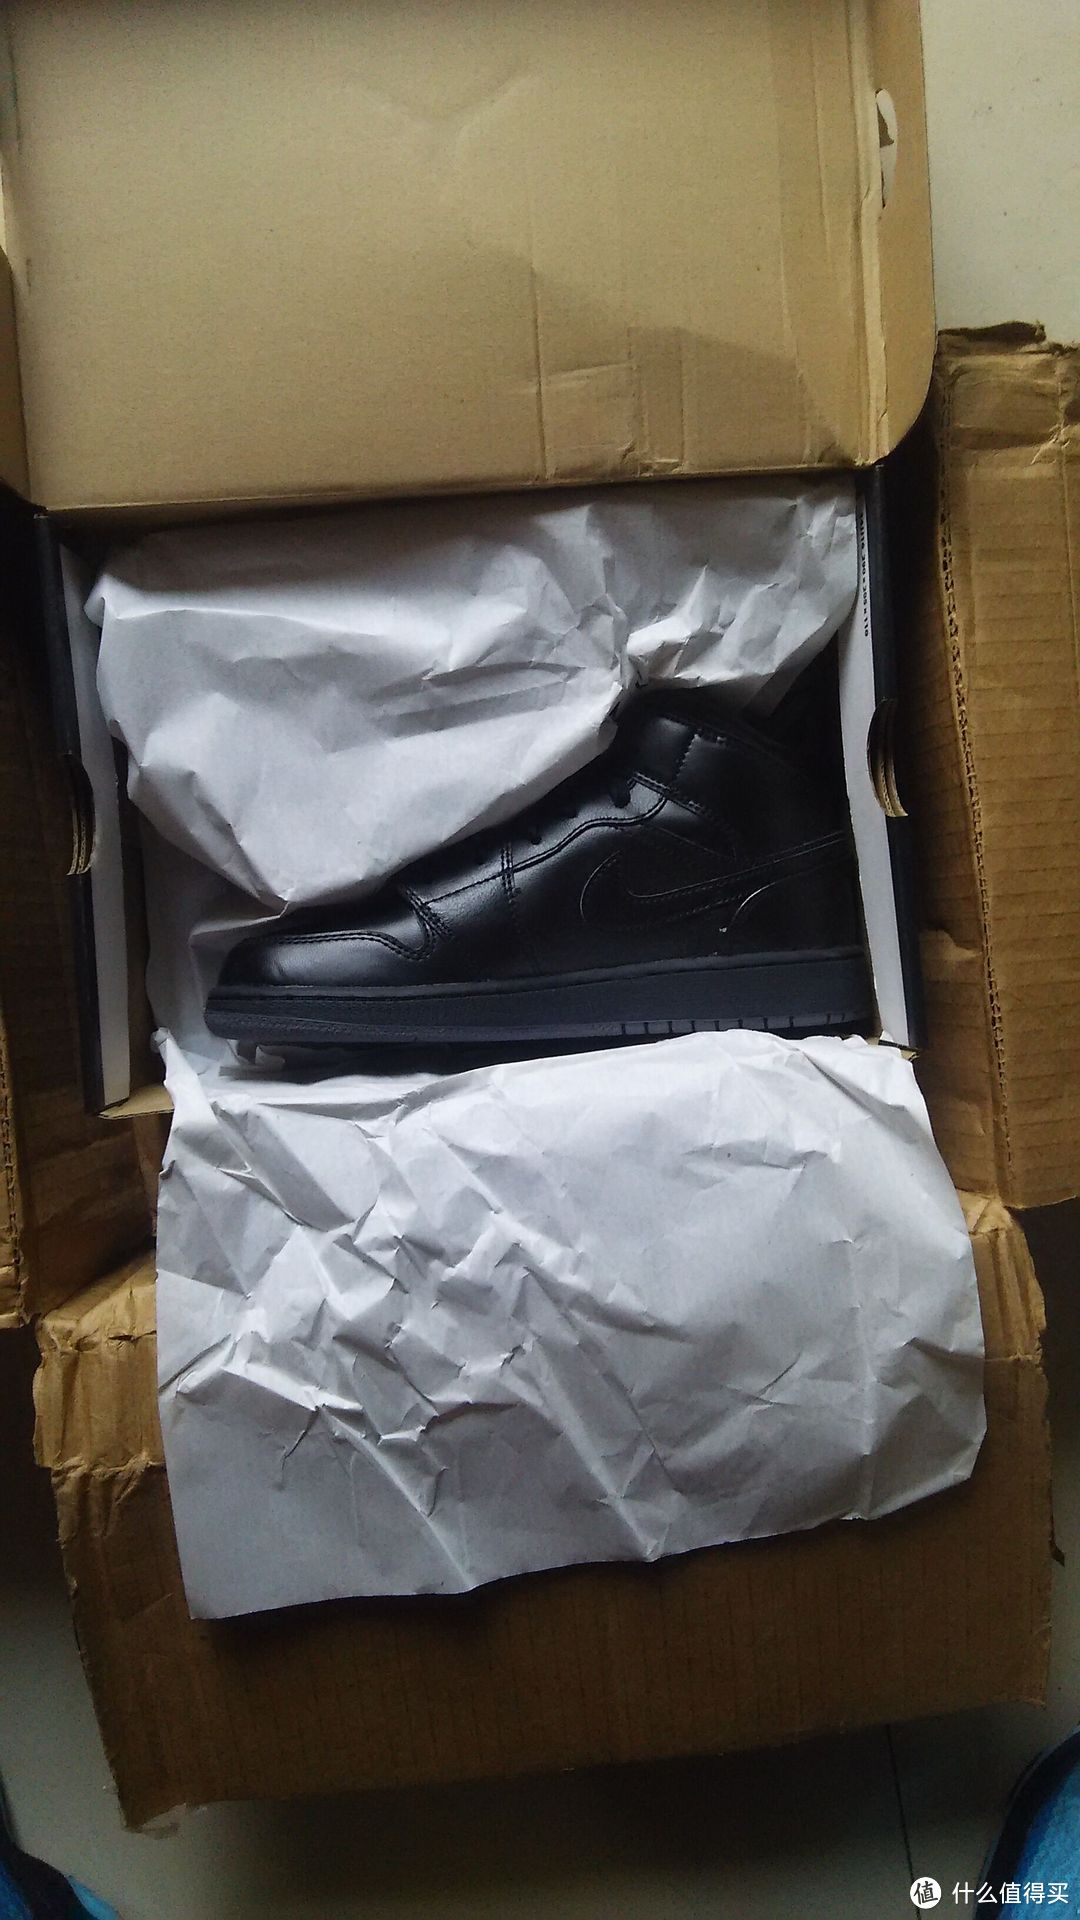 POLITICS首入Air Jordan 1 Mid “Black/Dark Grey”休闲运动鞋